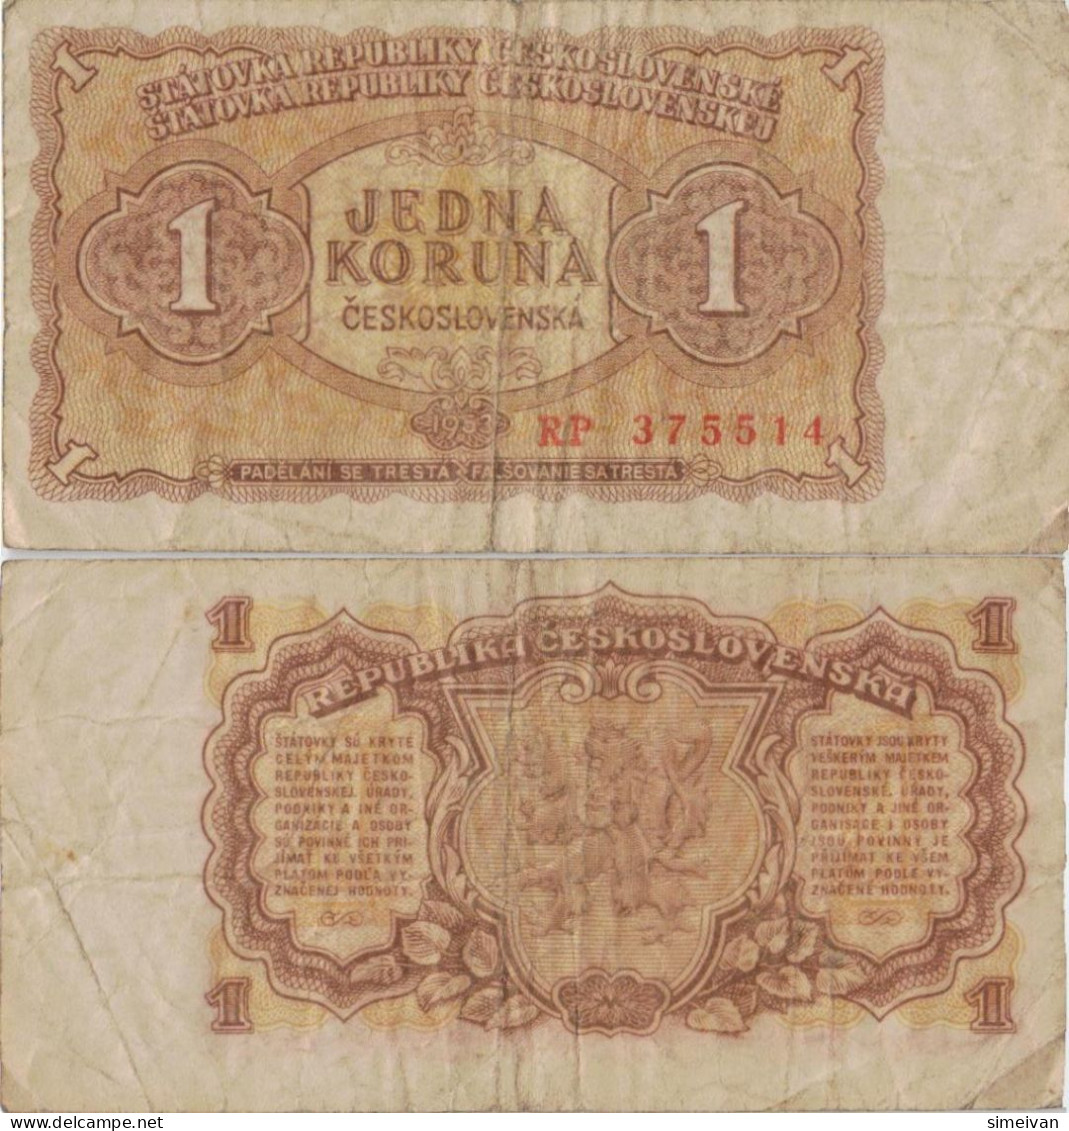 Czechoslovakia 1 Koruna 1953 P-78b Banknote Europe Currency Tchécoslovaquie Tschechoslowakei #5231 - Tchécoslovaquie